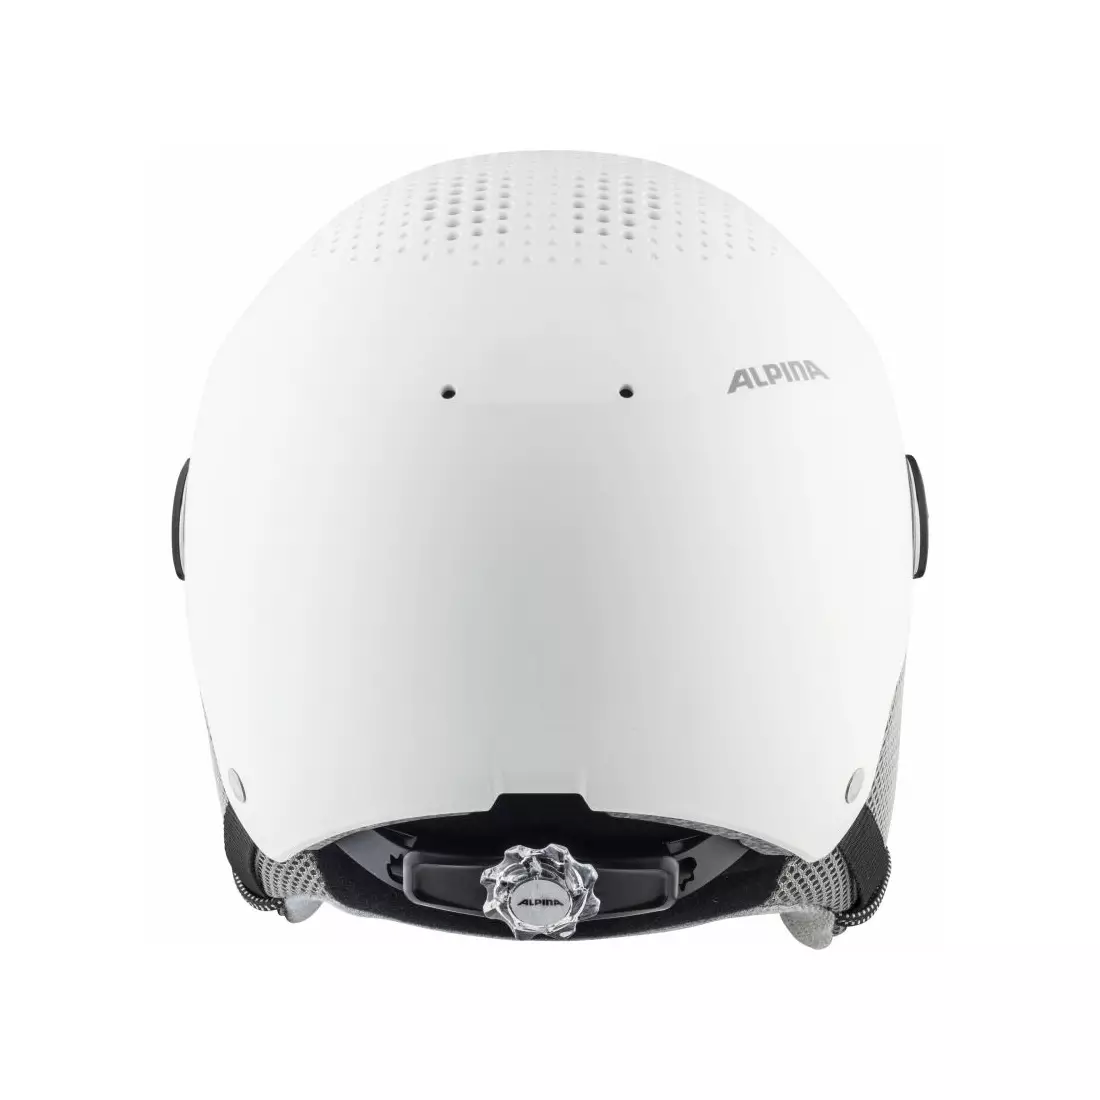 ALPINA winter ski/snowboard helmet ARBER VISOR white matt A9228312